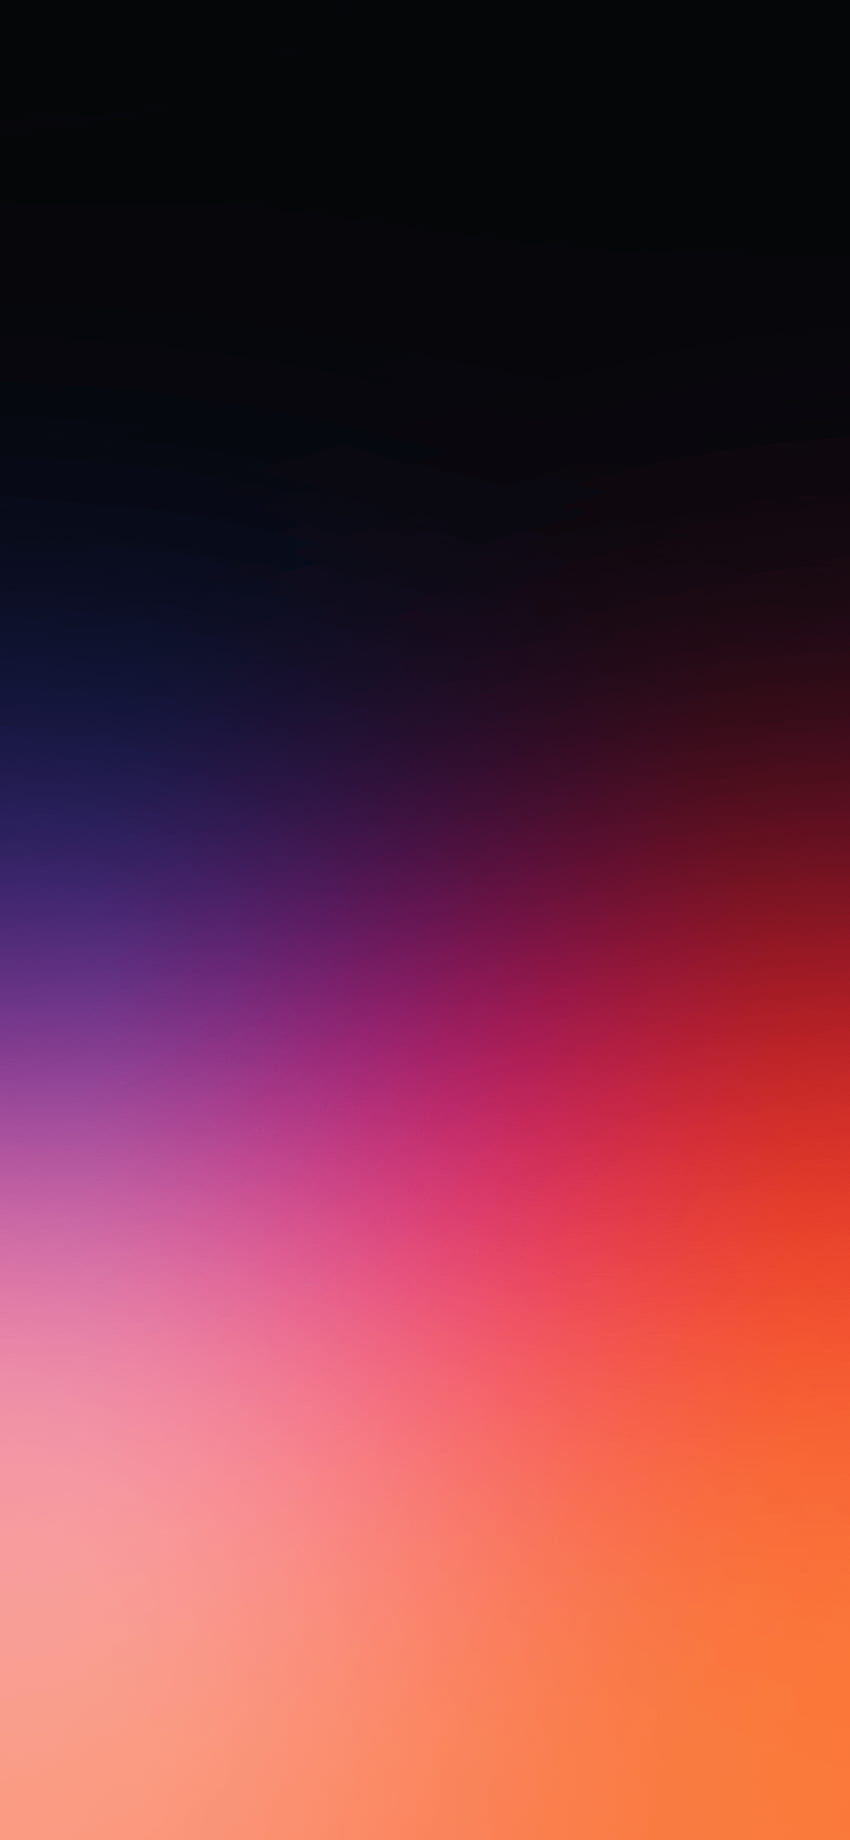 Gradien Oranye Dan Hitam, Gradien iPhone X wallpaper ponsel HD